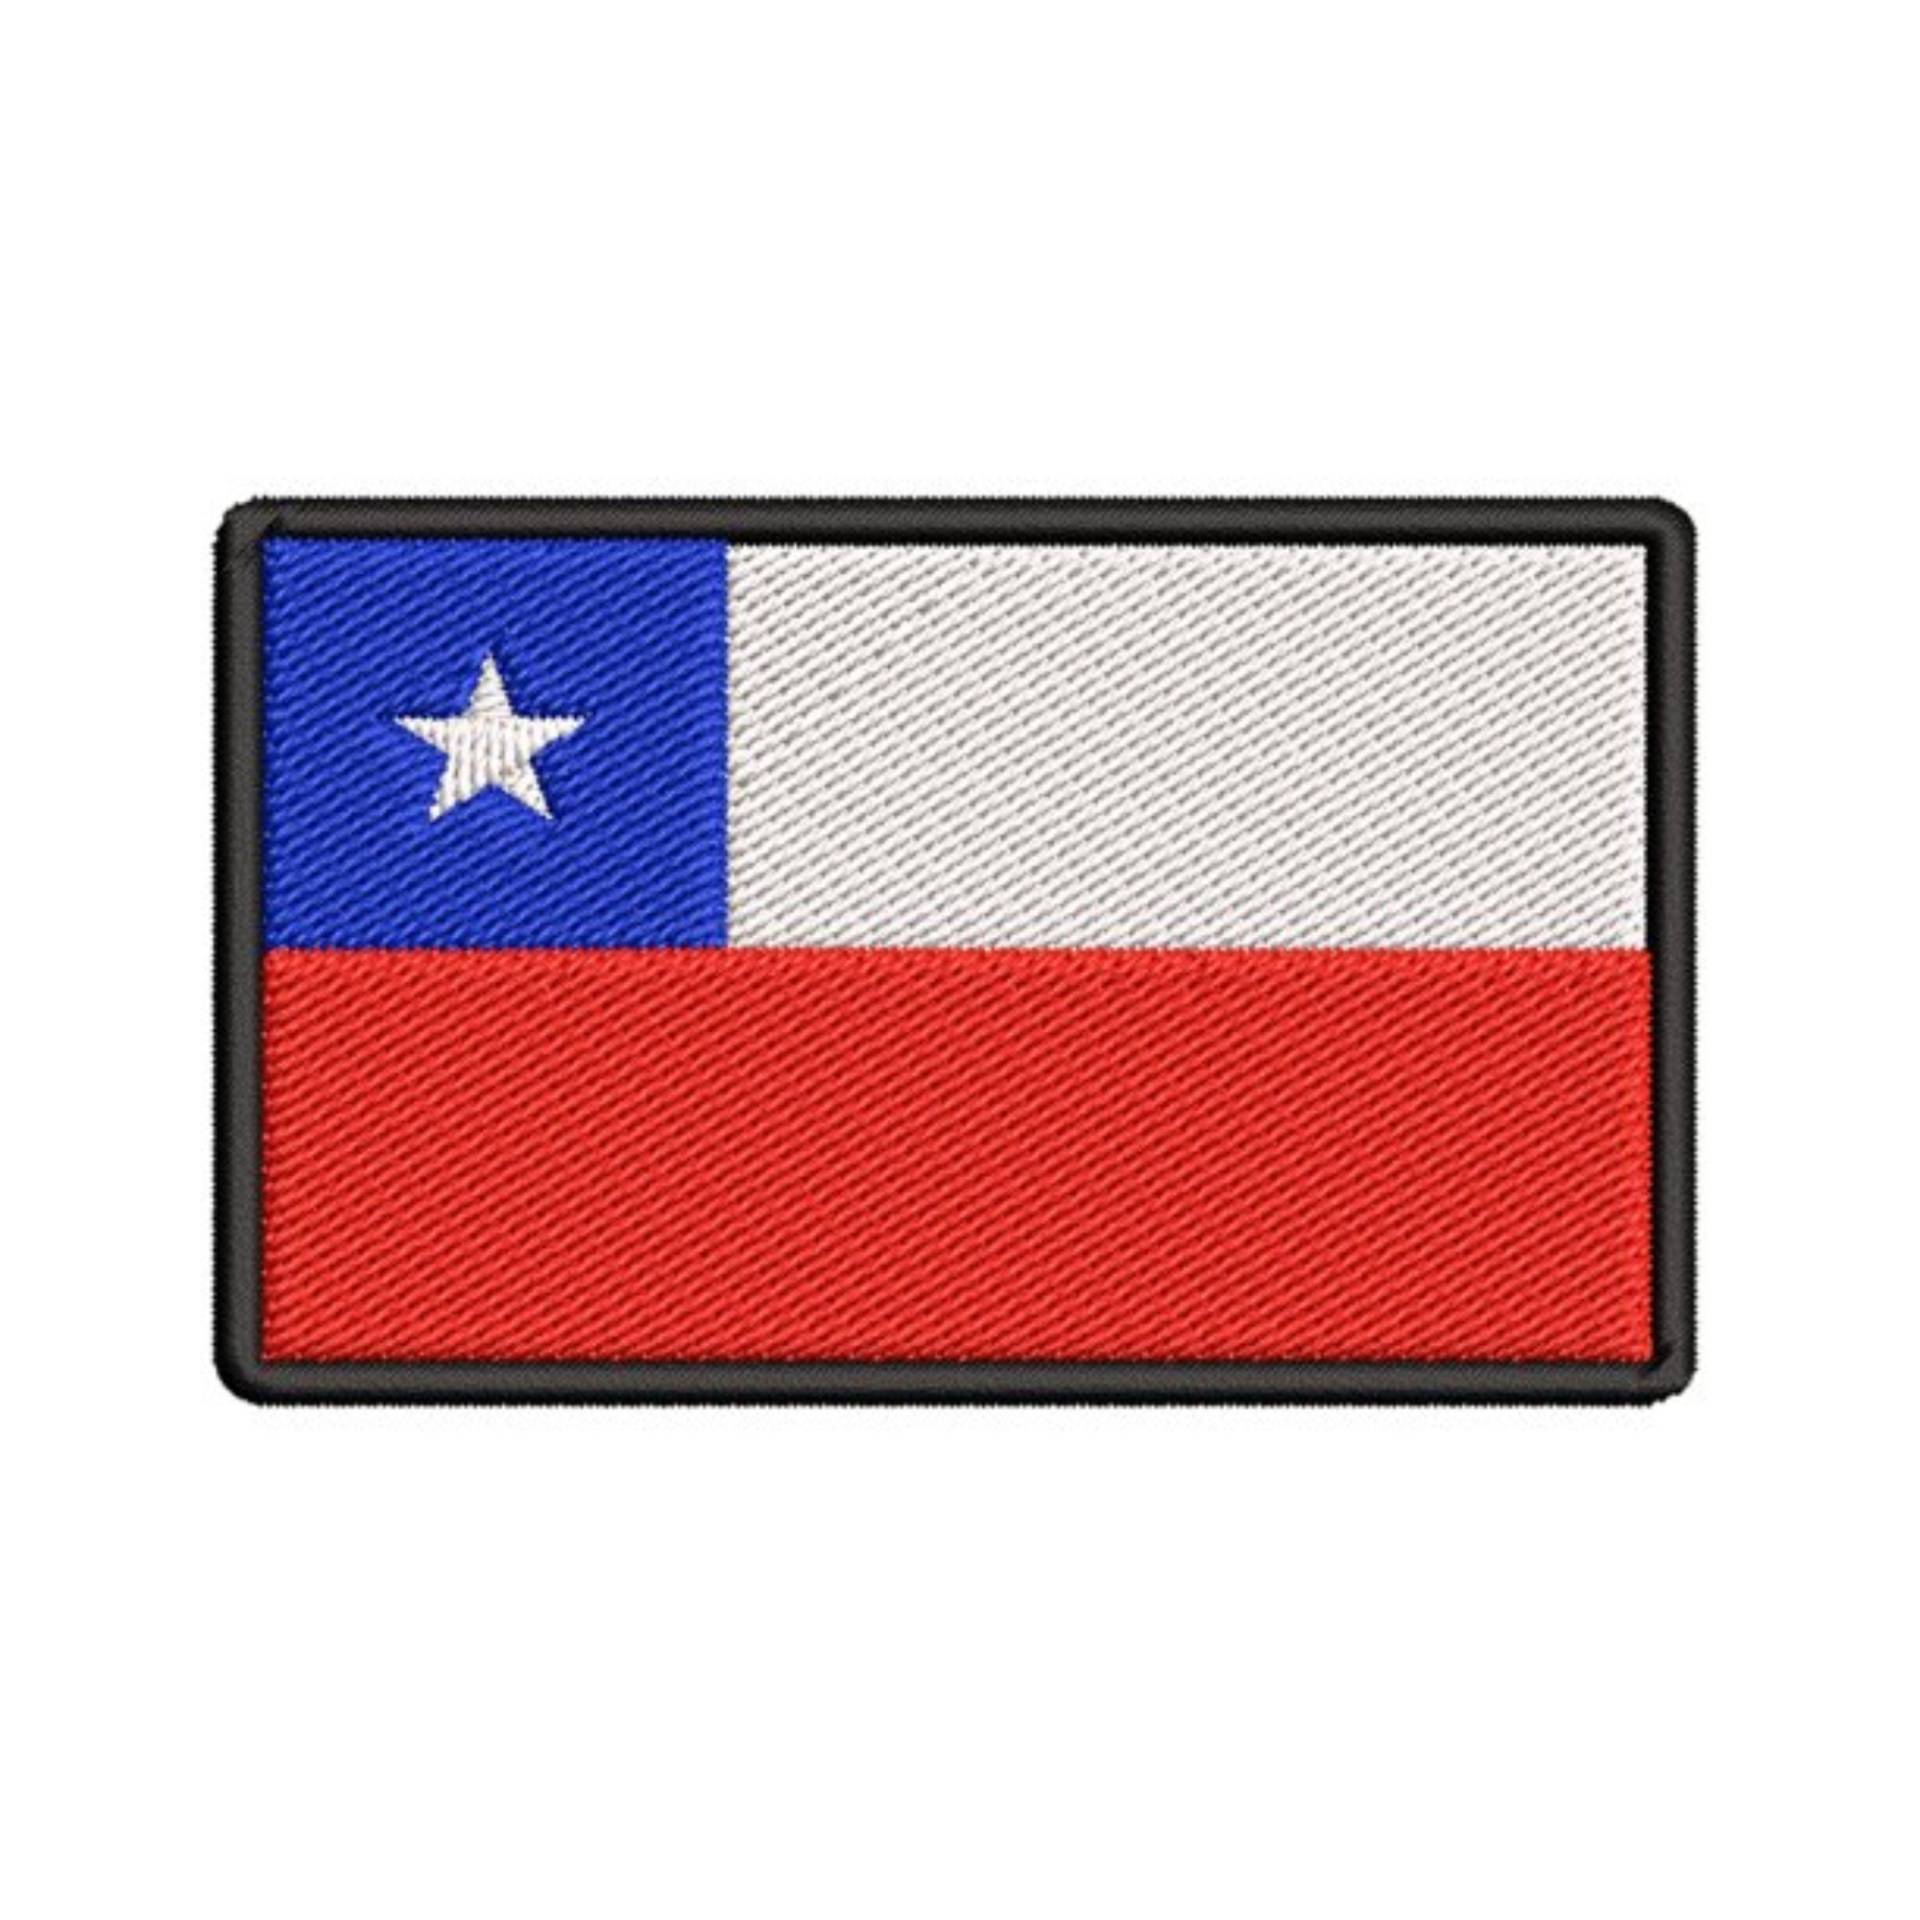 Chile Flagge Patch Gestickt Aufbügler, Schulter Uniform Weste Jacke, Reisen, Biker Mc Club Militärveteran Entdecker von FamilyAdventuresUS